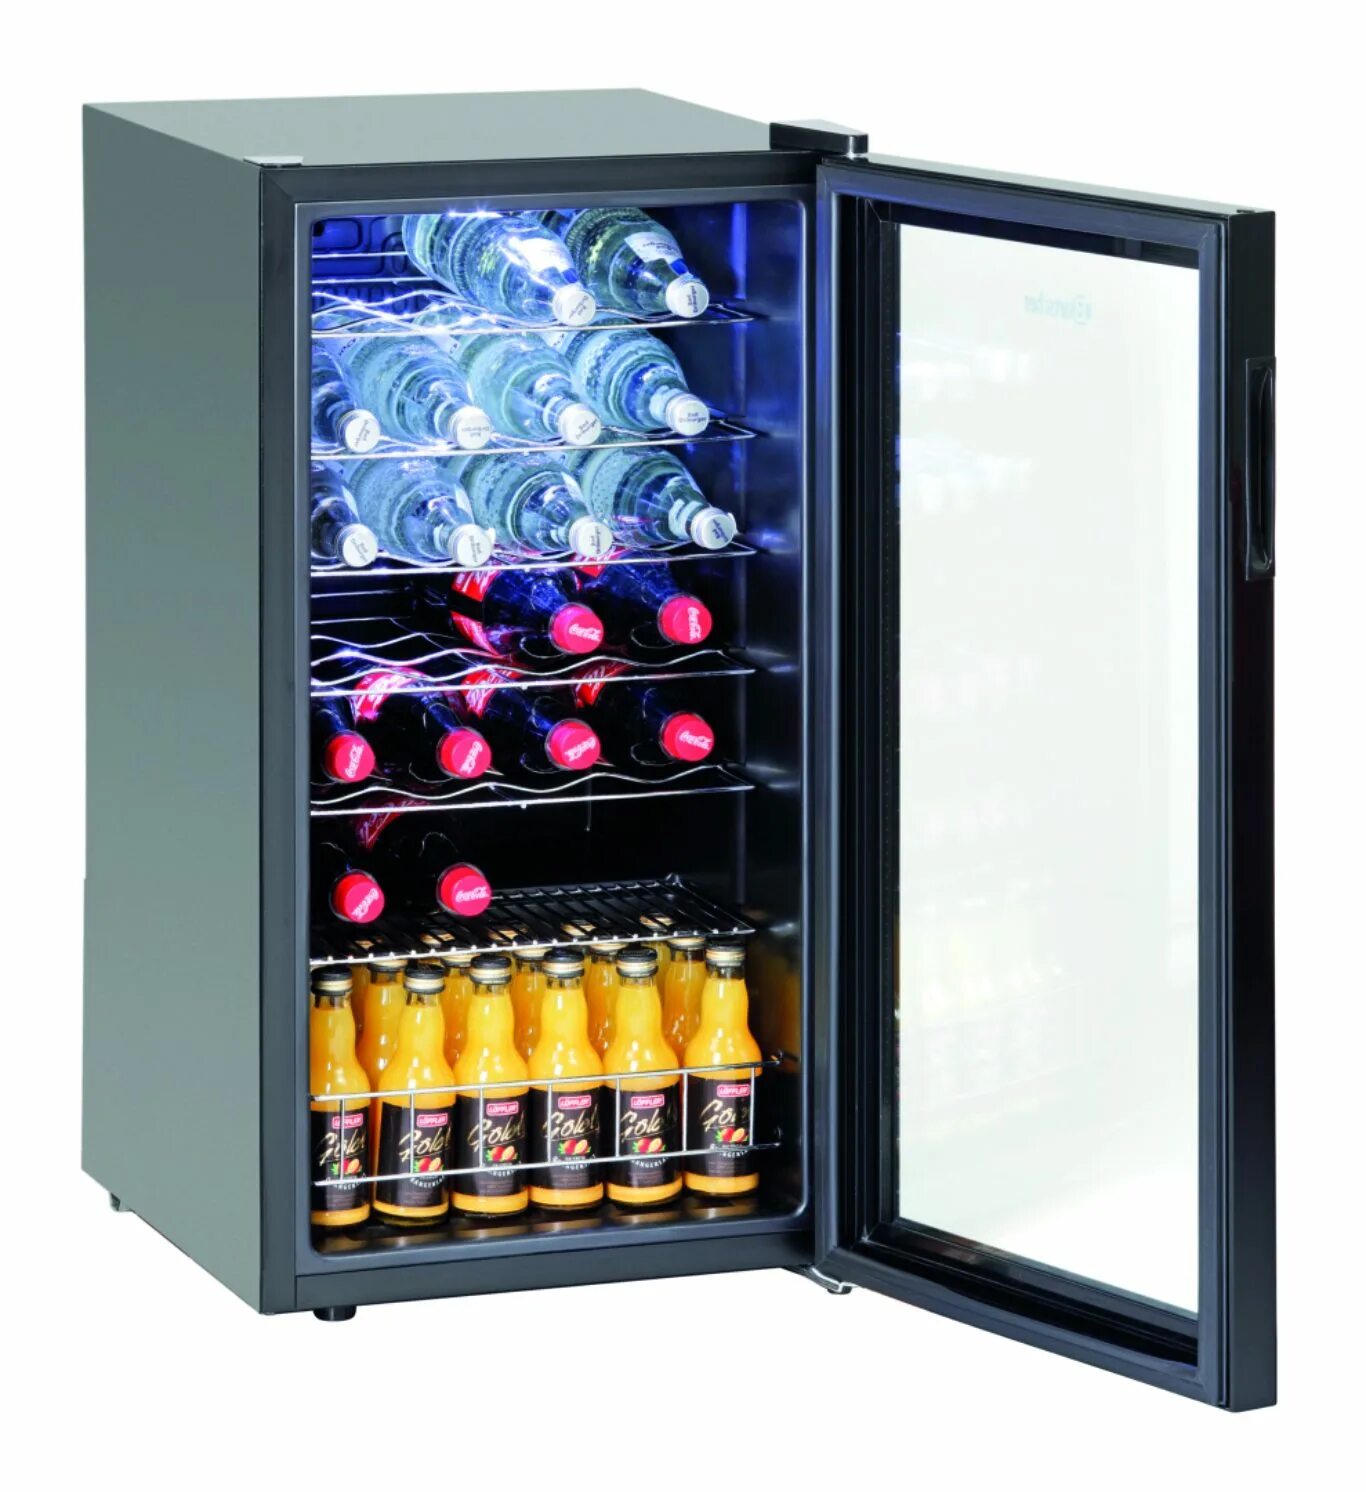 Шкаф Bartscher 700082g. Холодильник для напитков mings87. Шкаф холодильник для вина s183. Холодильный шкаф Mini Bartscher 700089. Холодильник для напитков купить стеклянной дверью